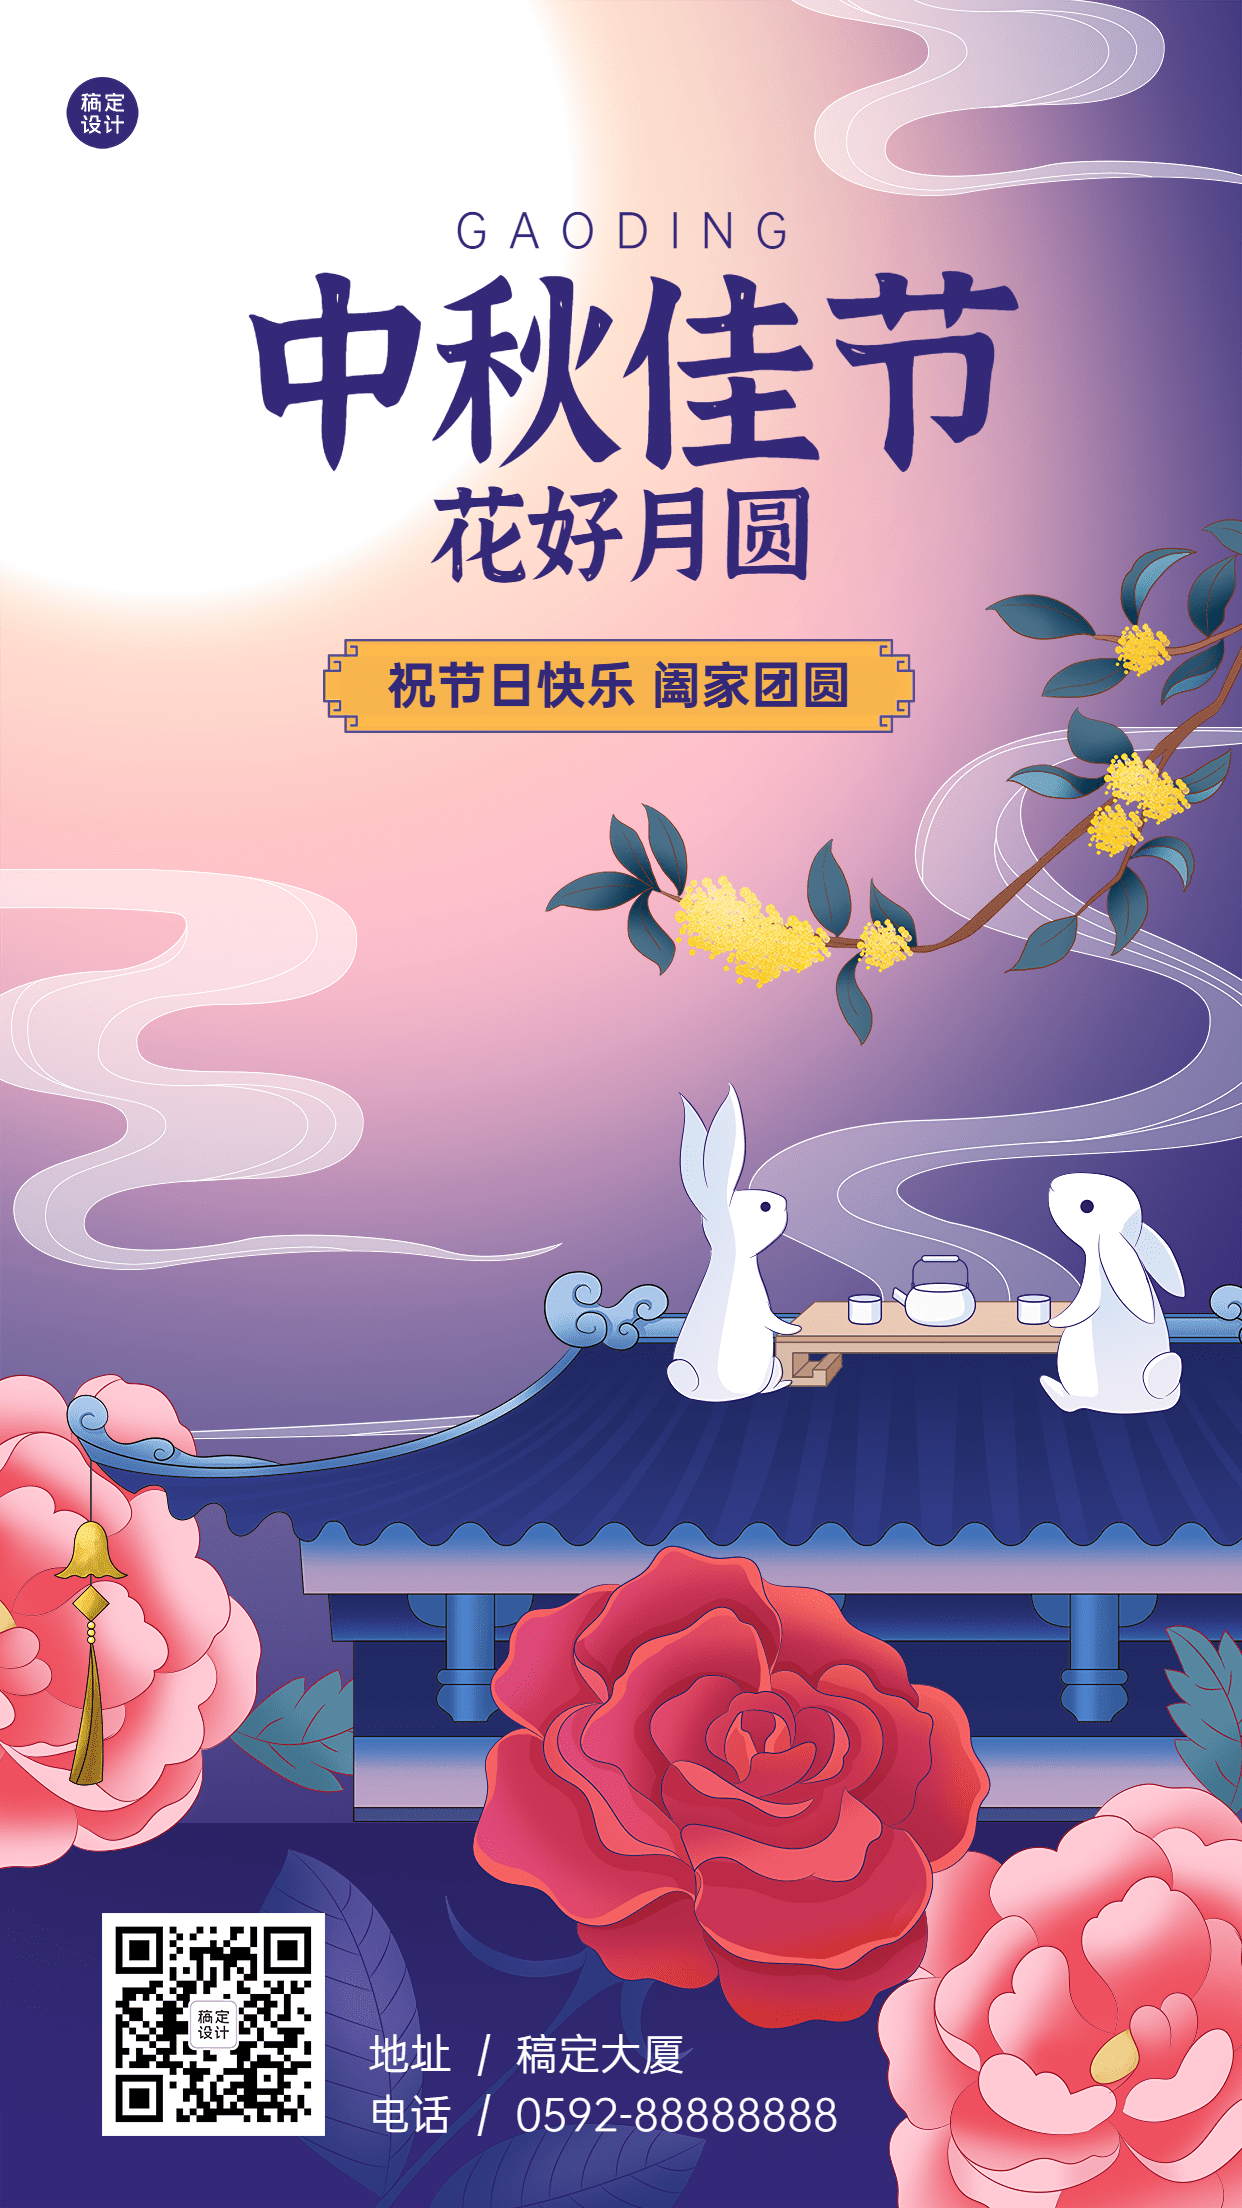 中秋节节日祝福电子贺卡排版插画手机海报预览效果